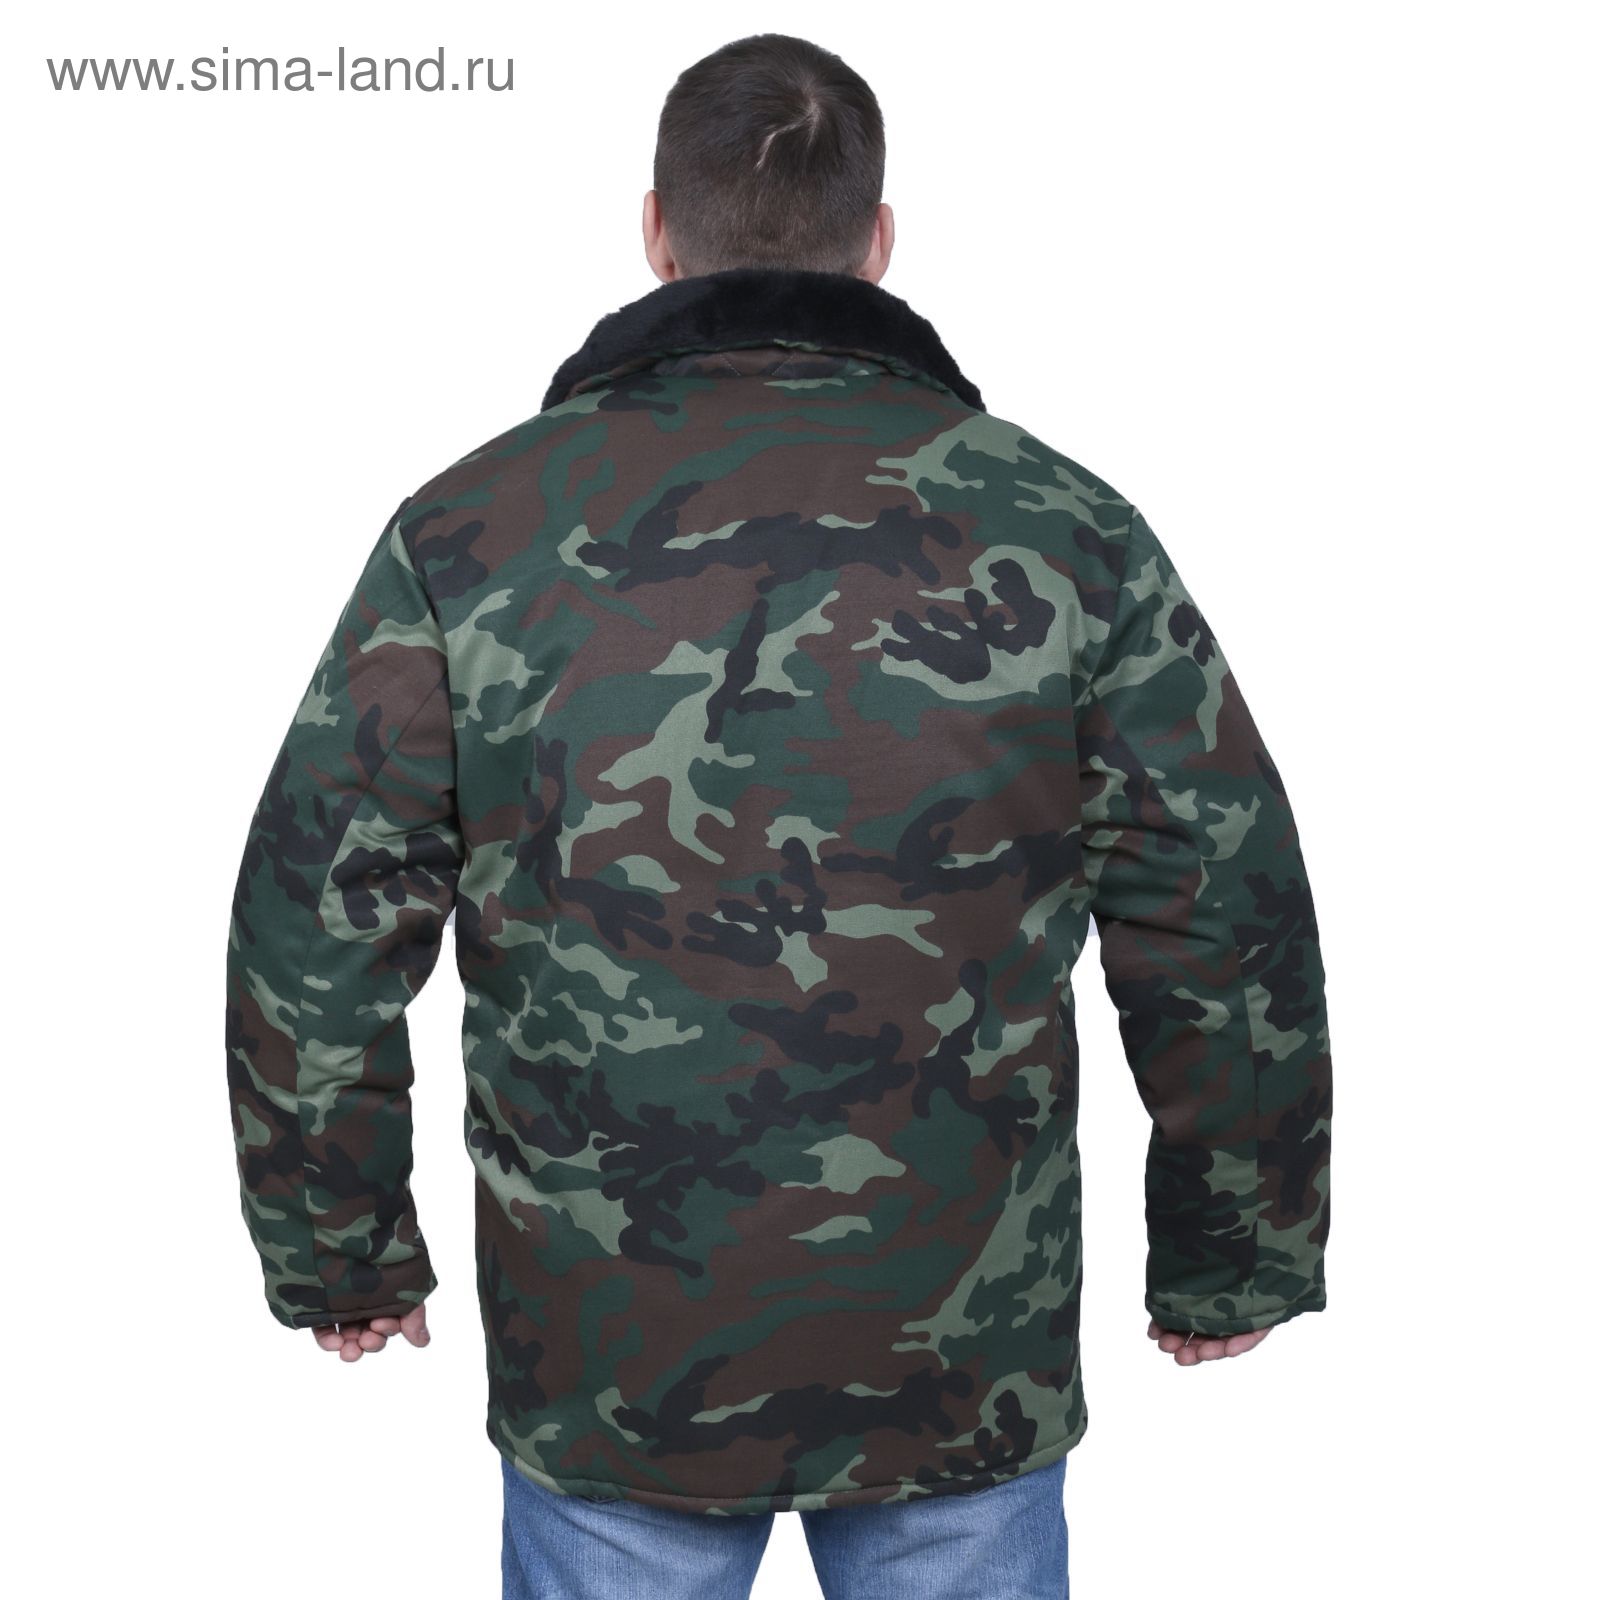 Куртка утеплённая, размер 44, рост 170-176 см, цвет зелёный